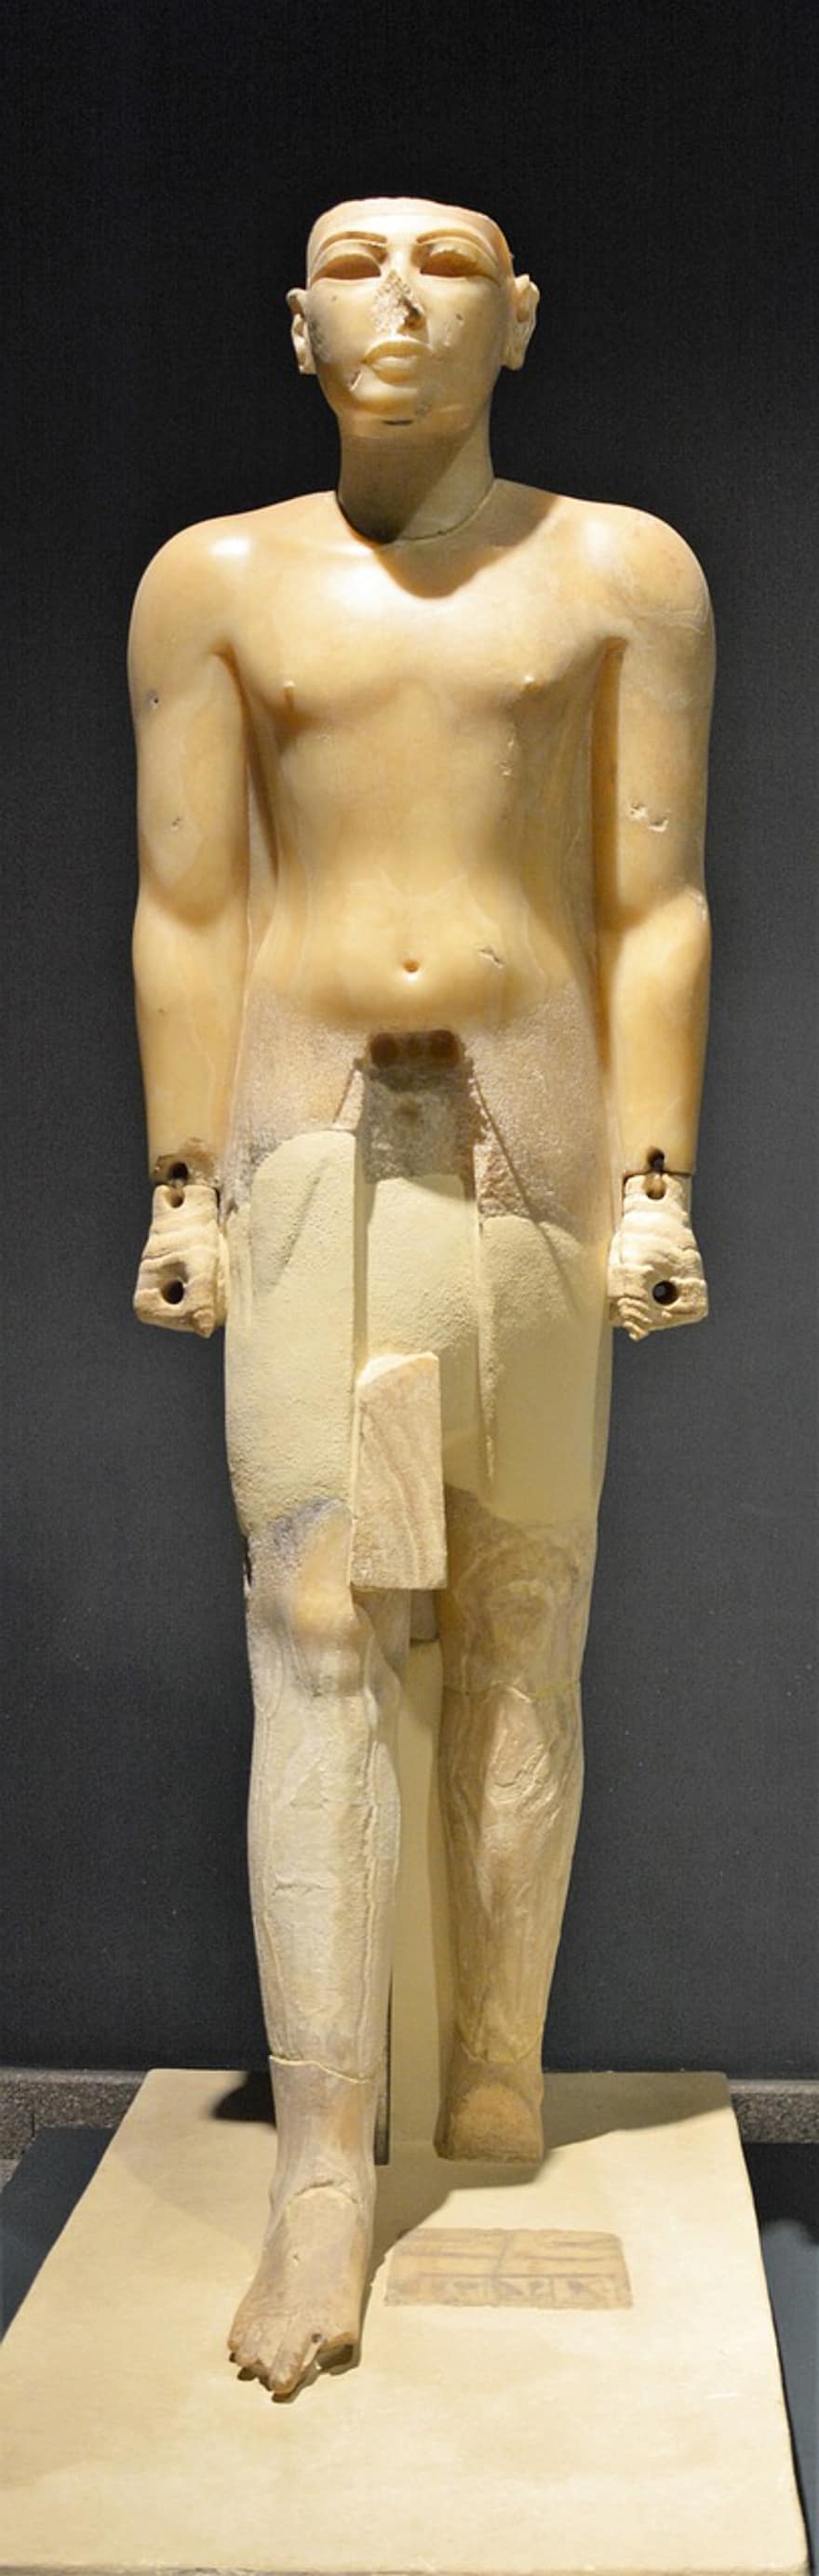 statula, senoji skulptūra, Senovės Egipto artefaktas, muziejus